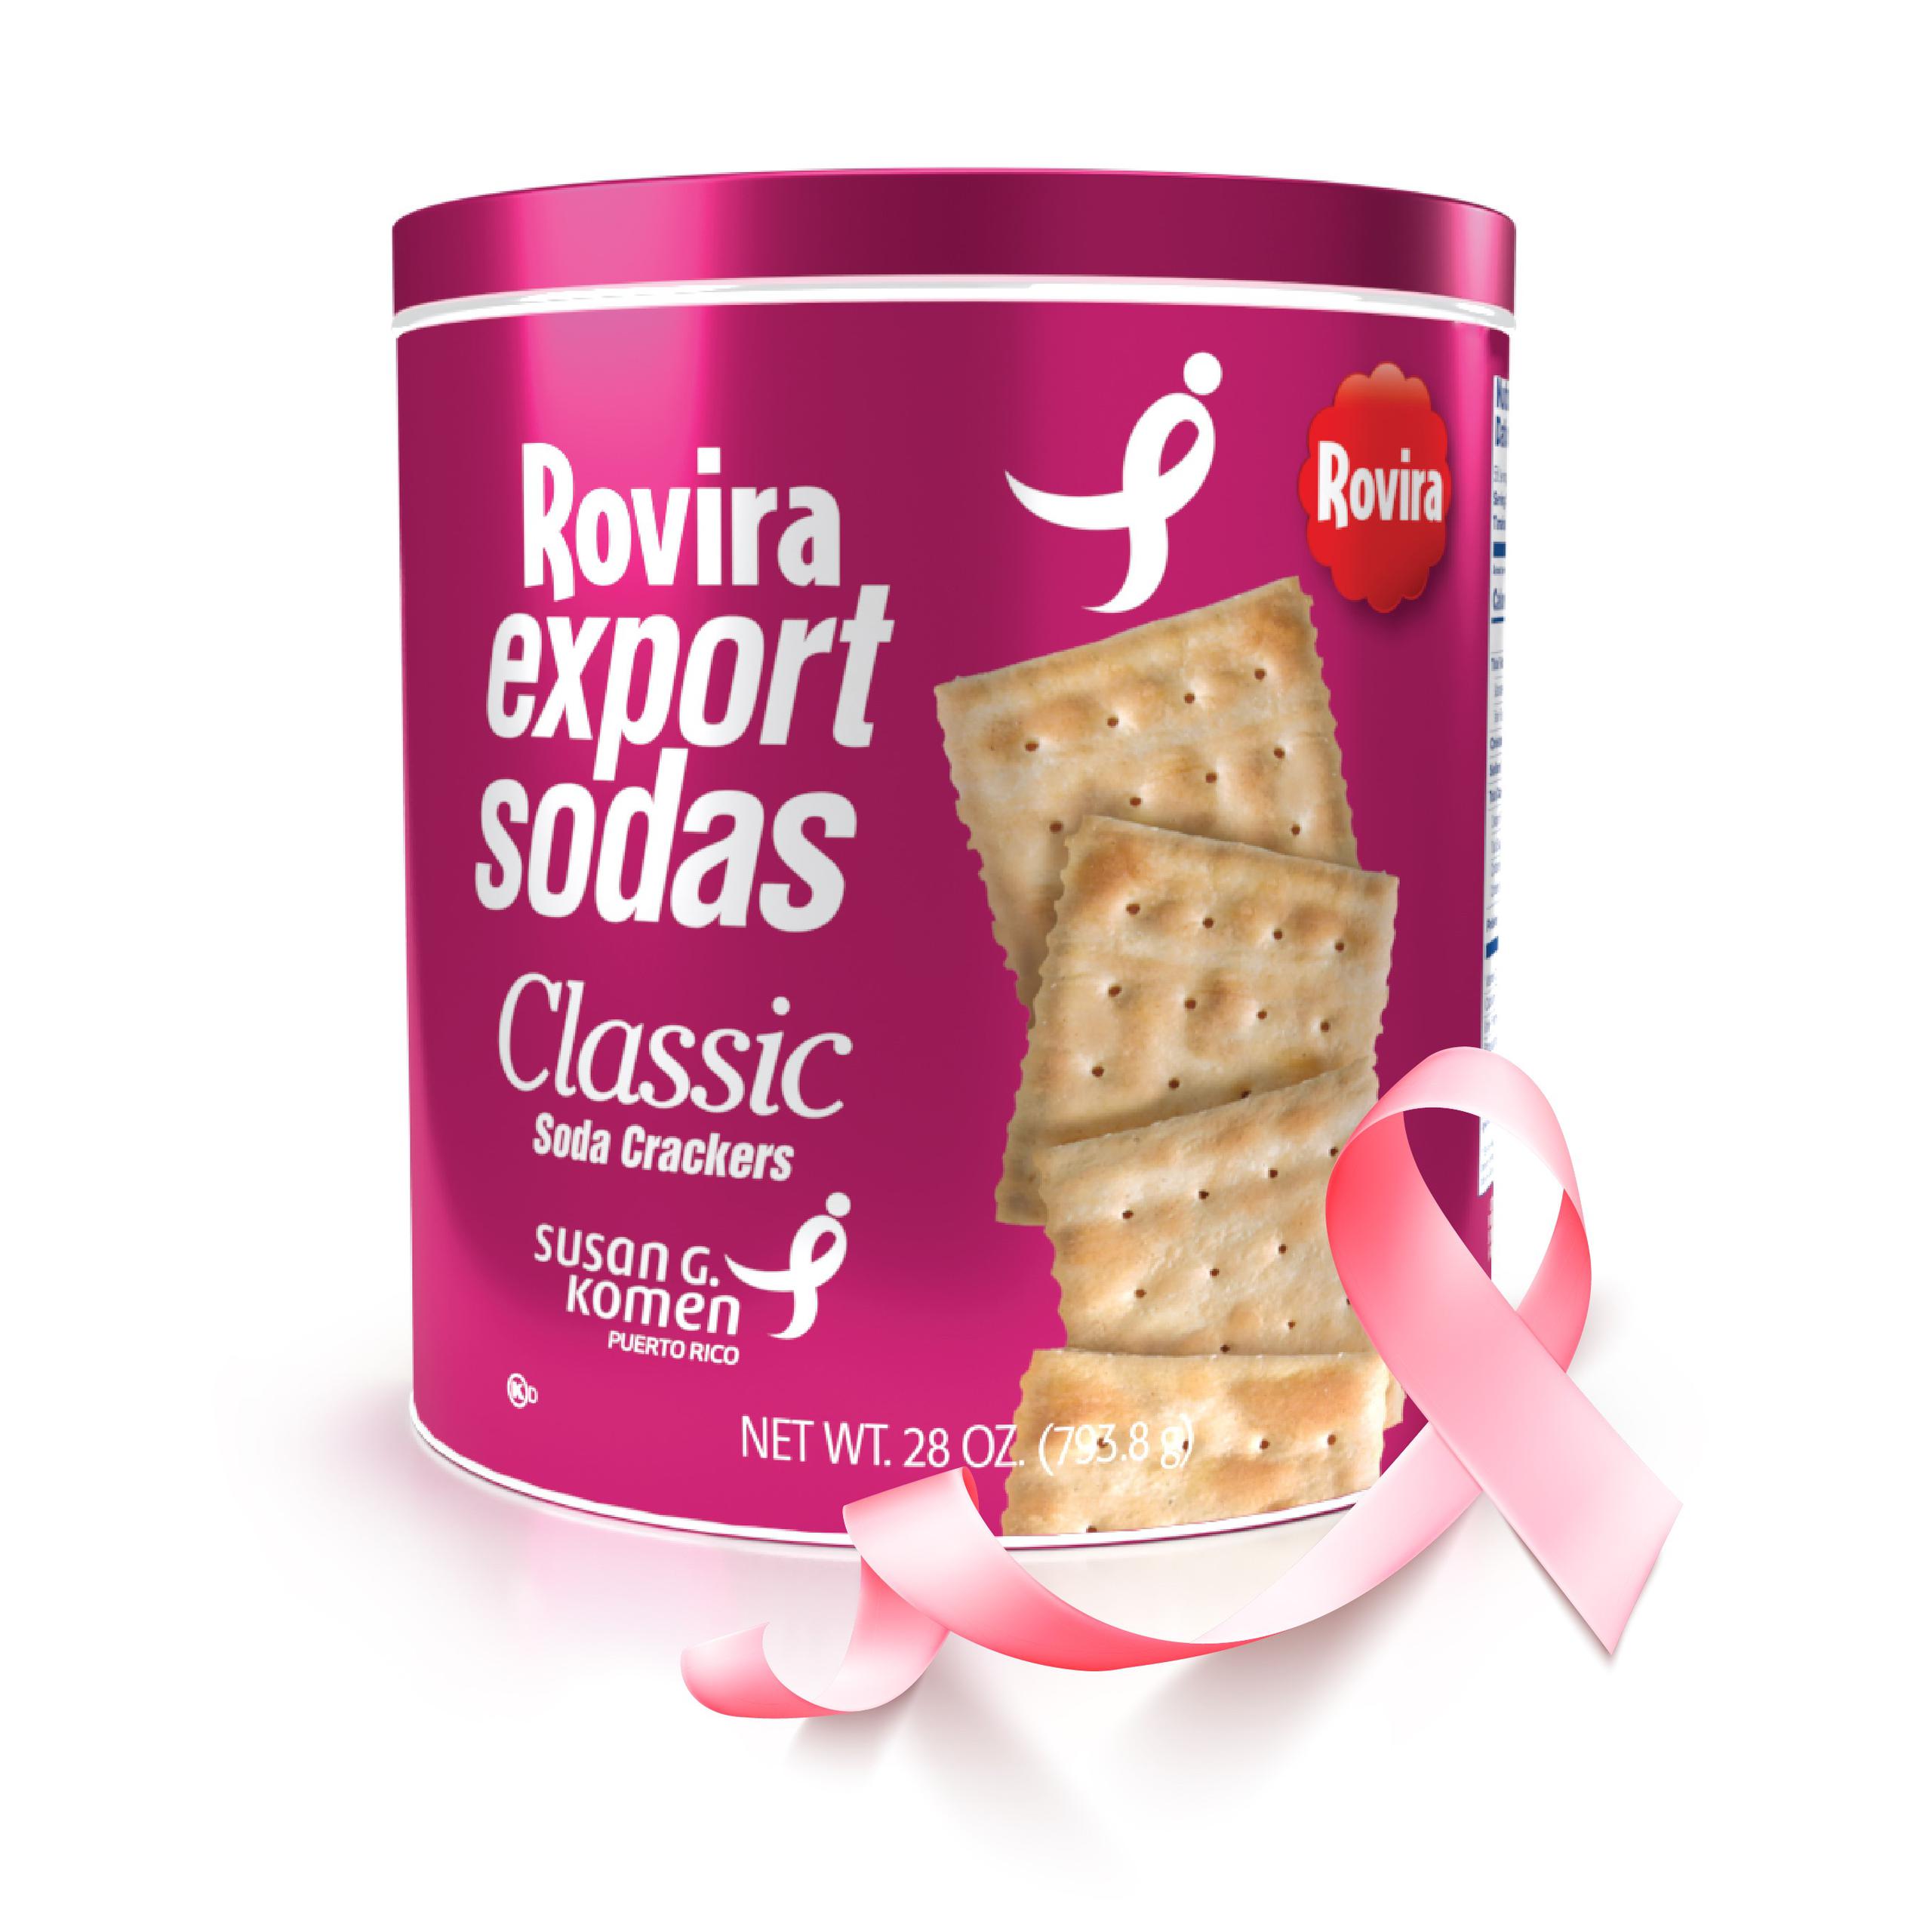 La icónica lata azul de las galletas Rovira Export Sodas Classic se viste de rosa e incorpora, en su interior, información educativa para la salud de los senos.